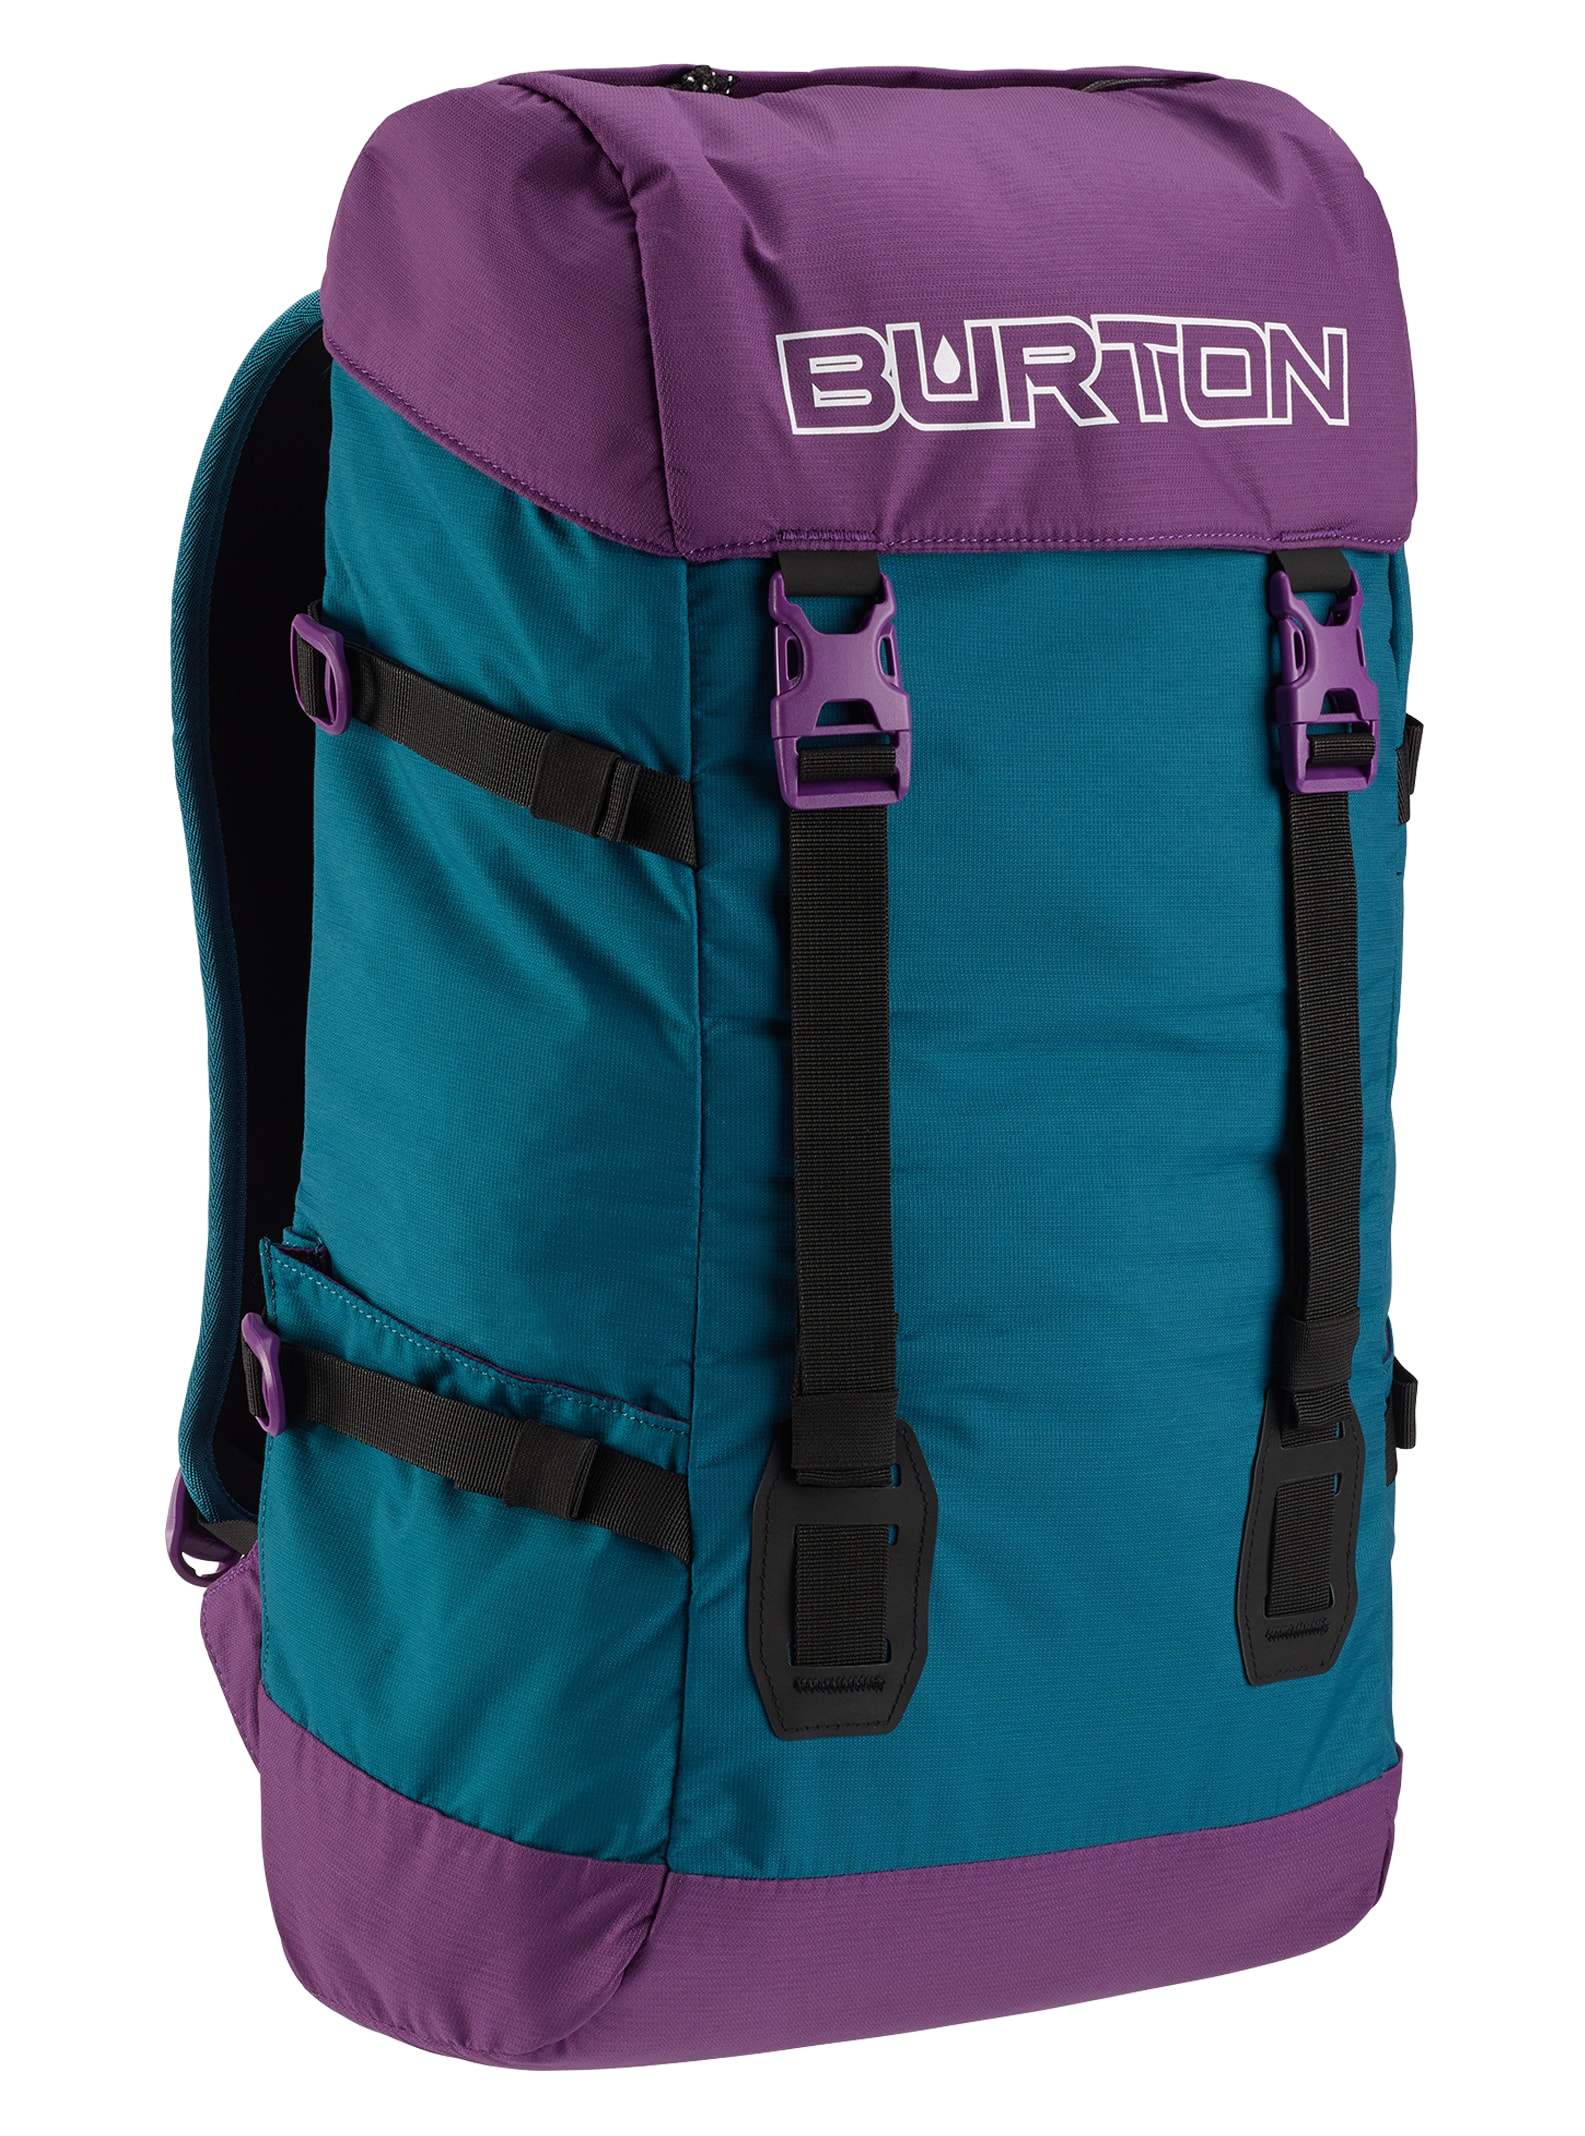 Burton Tinder 2.0 30L Solution-Dyed Backpack | Burton.com Spring 2020 US